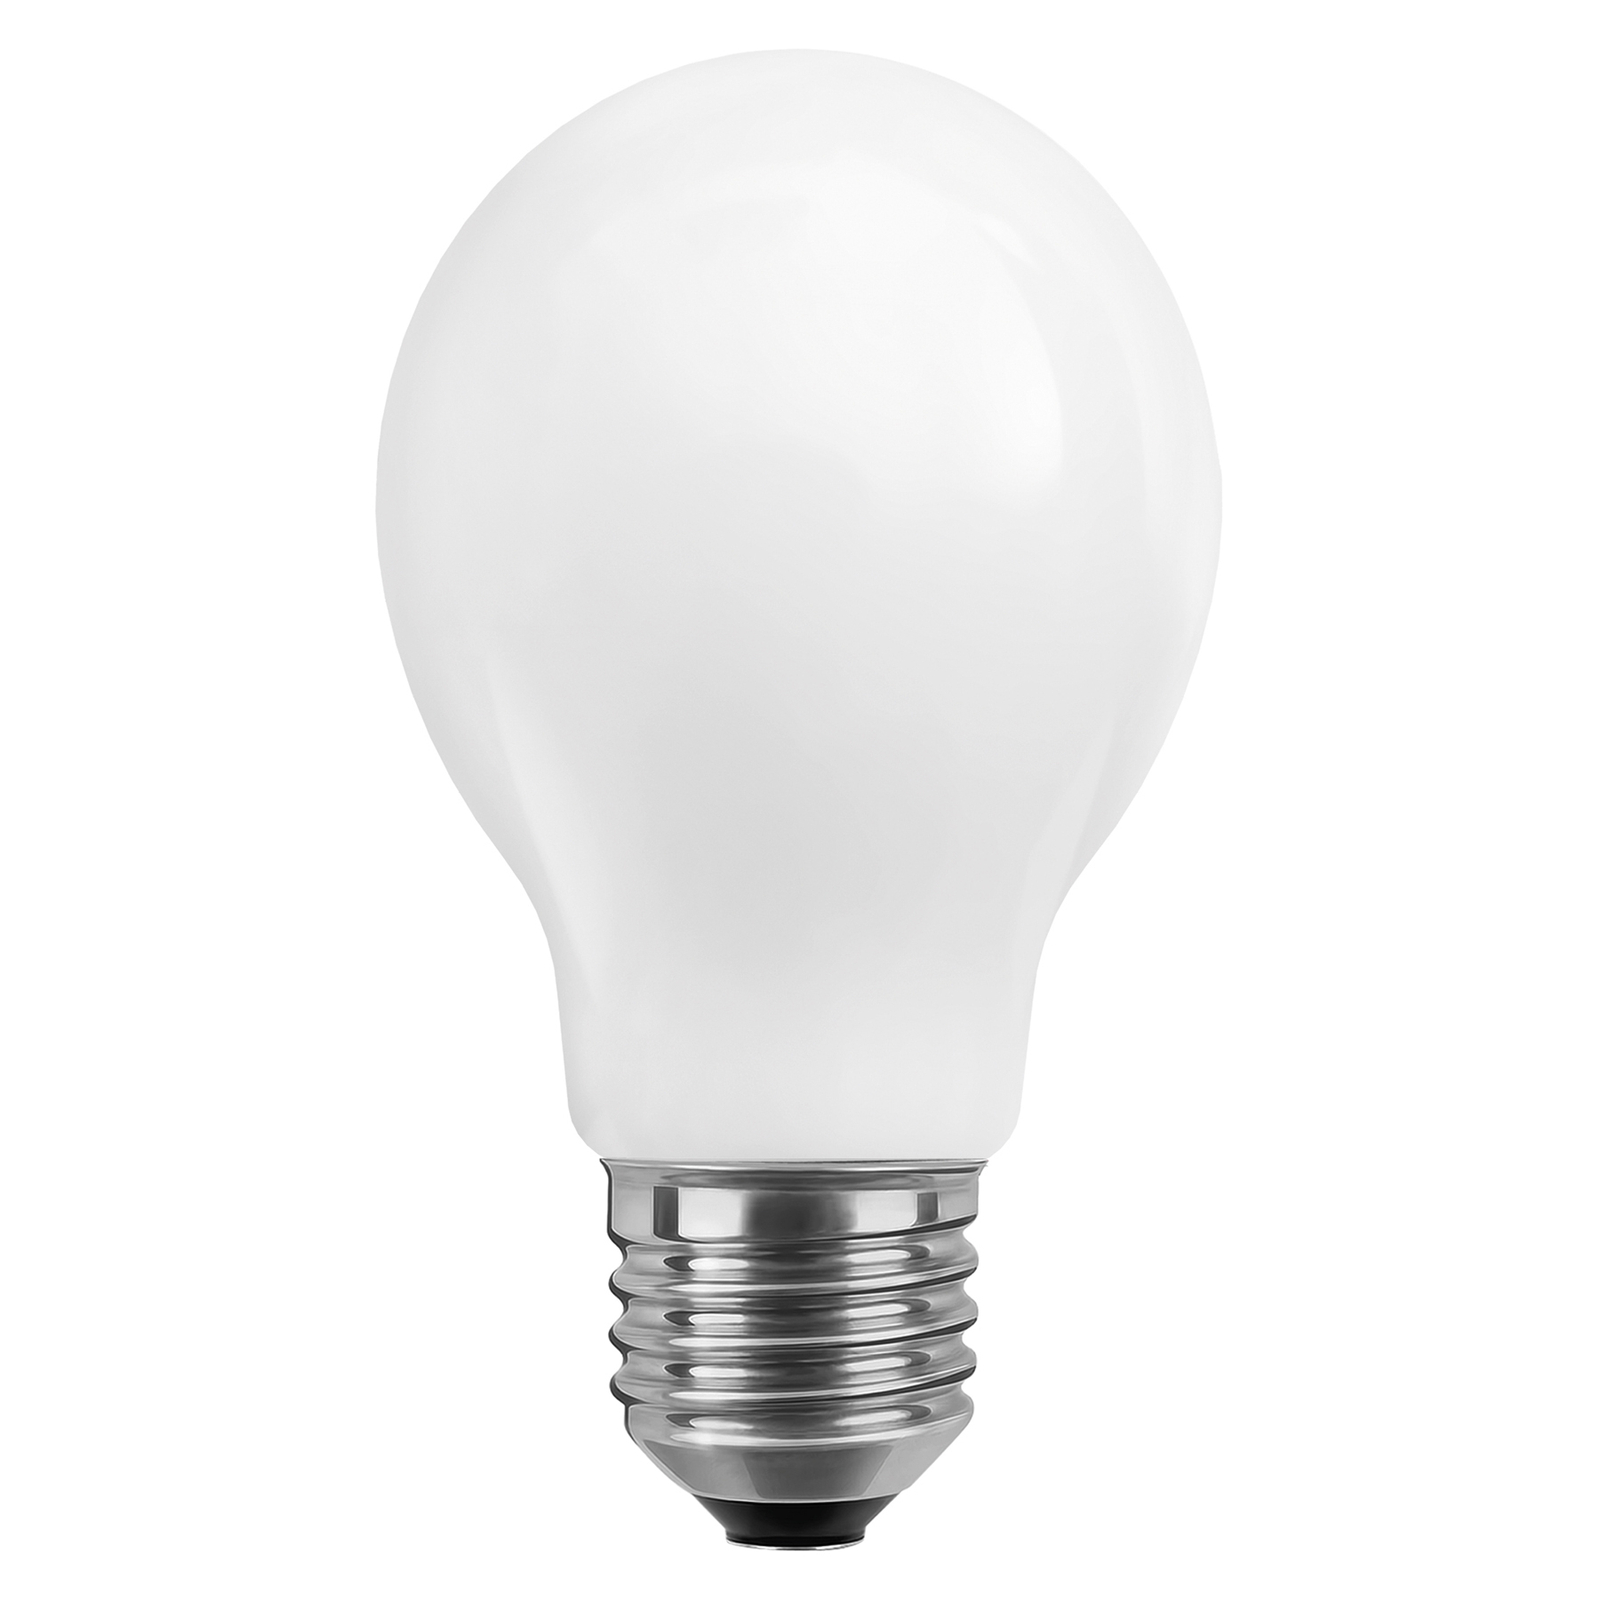 SEGULA lampadina LED E27 opale 8W ambient-dimming